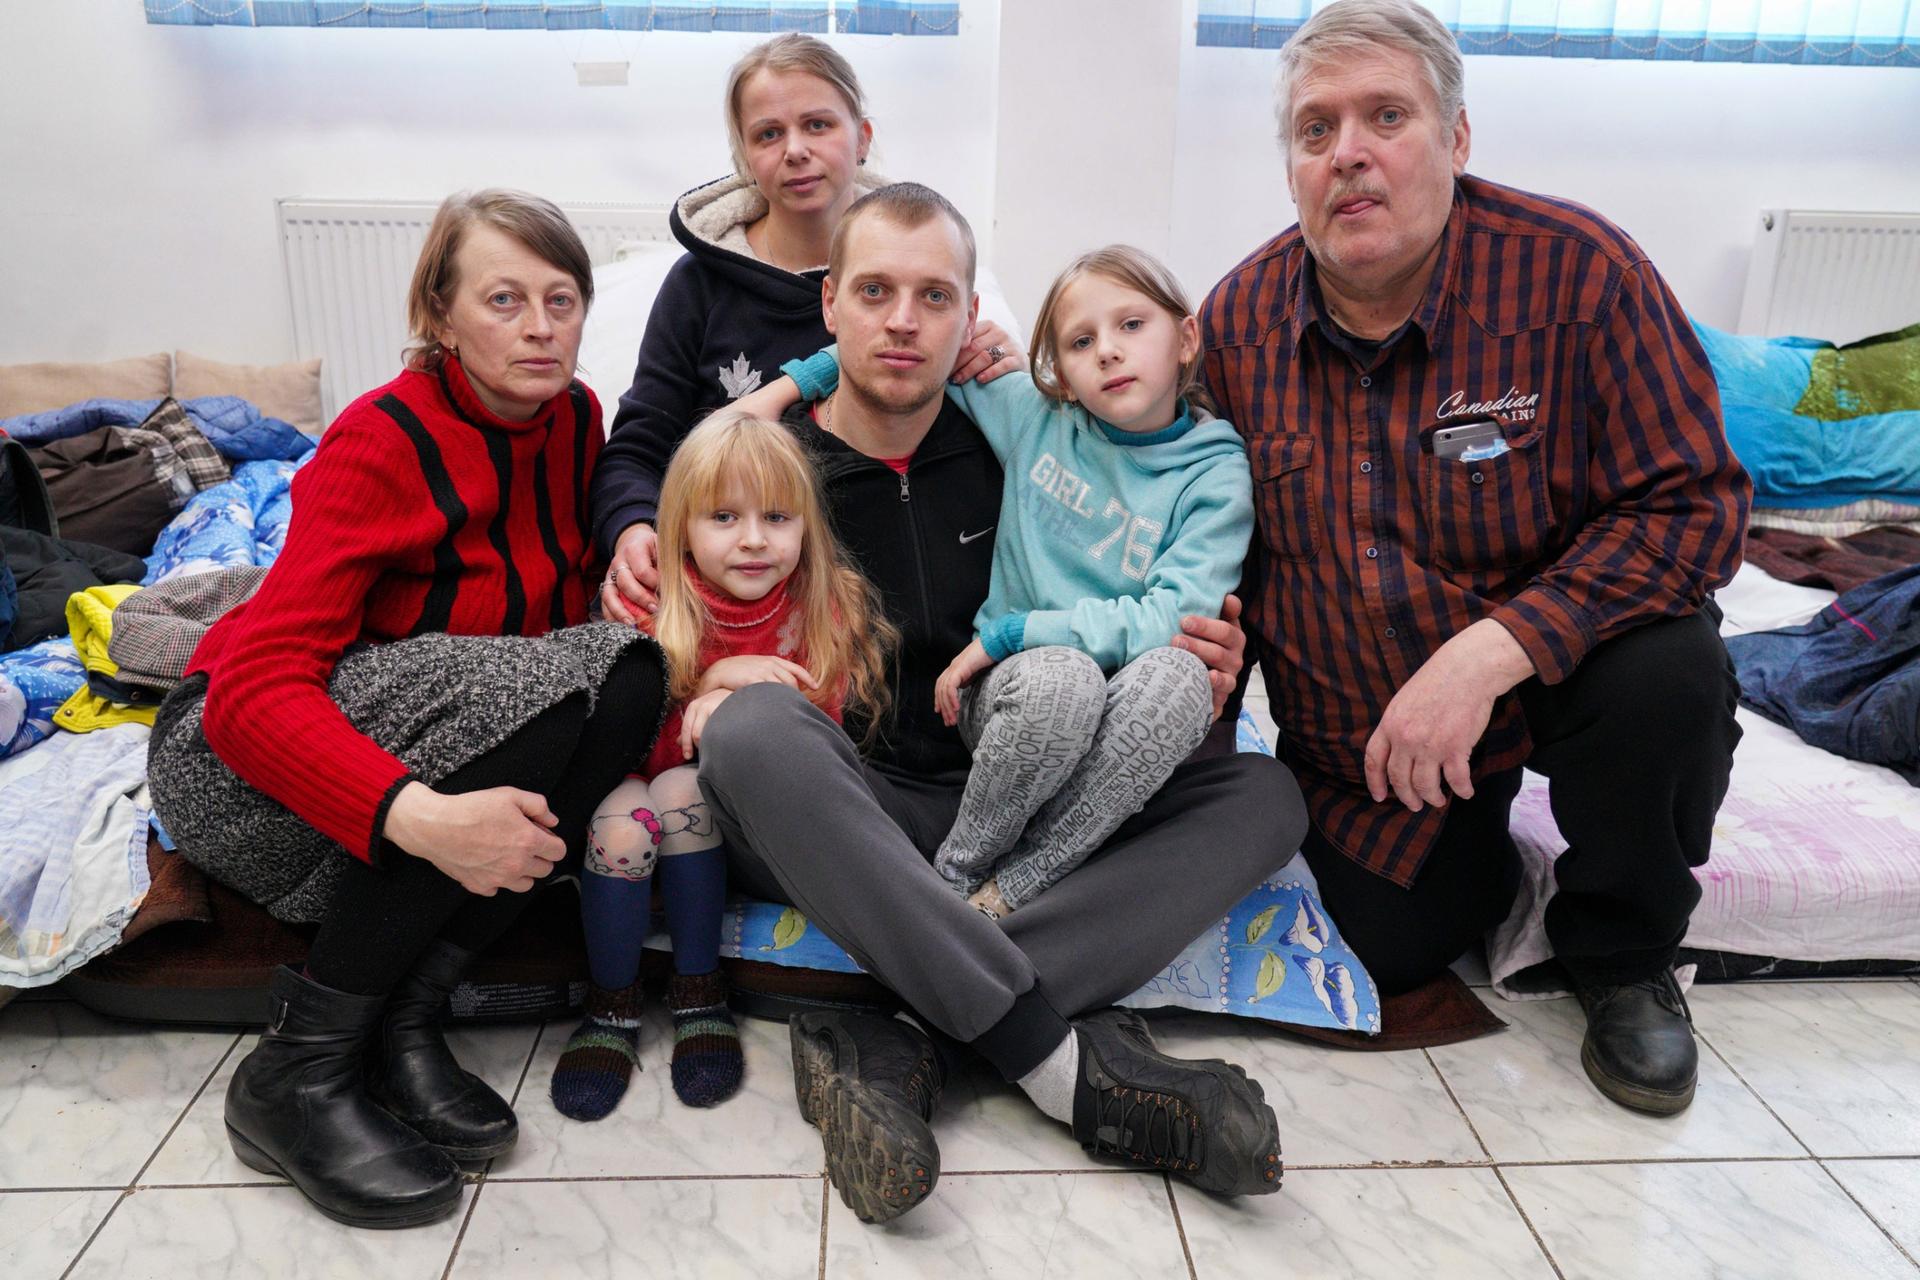 The Podlipian family, from left to right: Valentina Podlipian, Diana (6), Inna Podlipian, Denis Podlipian, Valentina (9), Andriy Podlipian. 